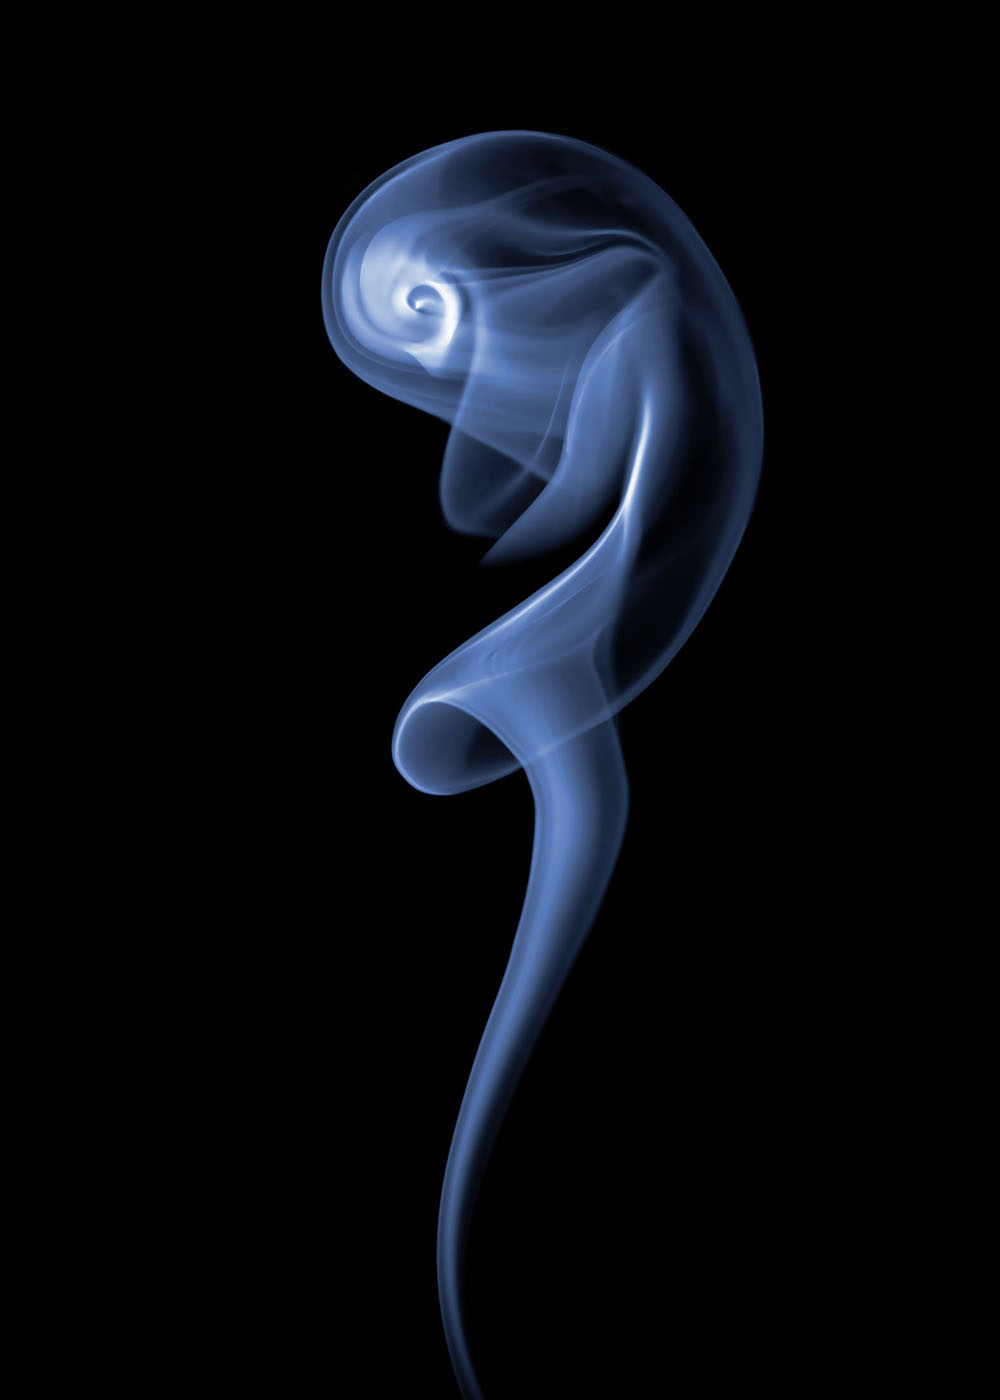 Парейдолические иллюзии из дыма от фотографа Томаса Хербриха